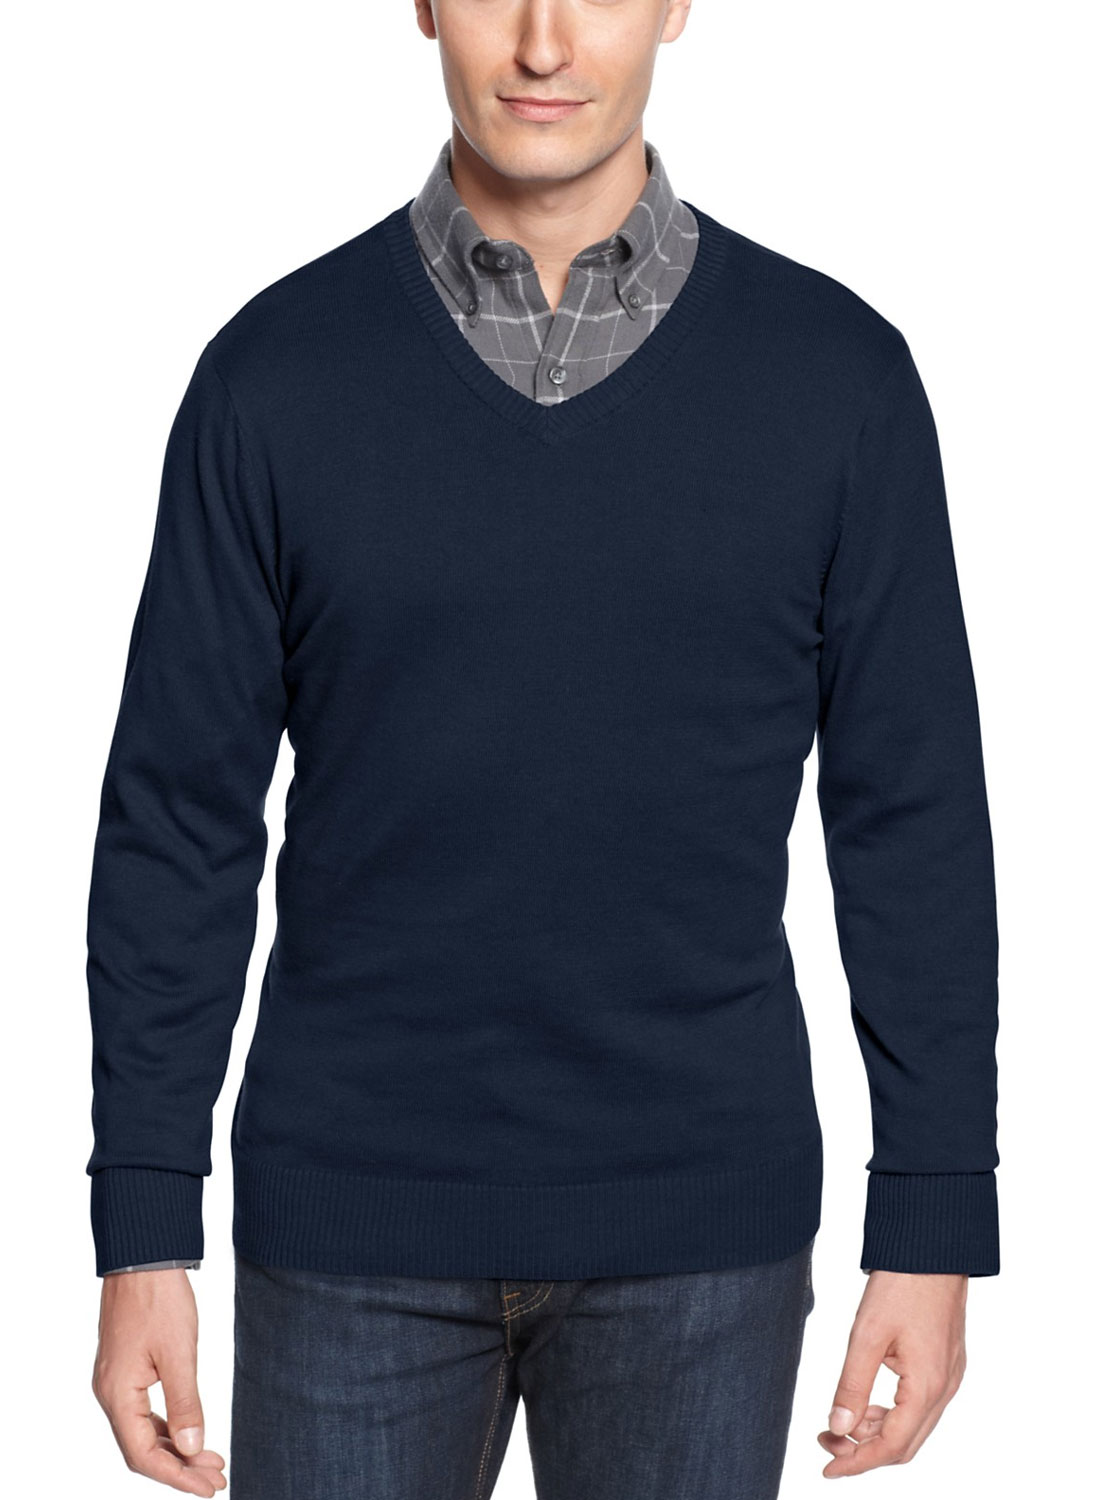 JOHN ASHFORD Mens Cotton V Neck Sweater Navy Blue Pull Over - image 1 of 1